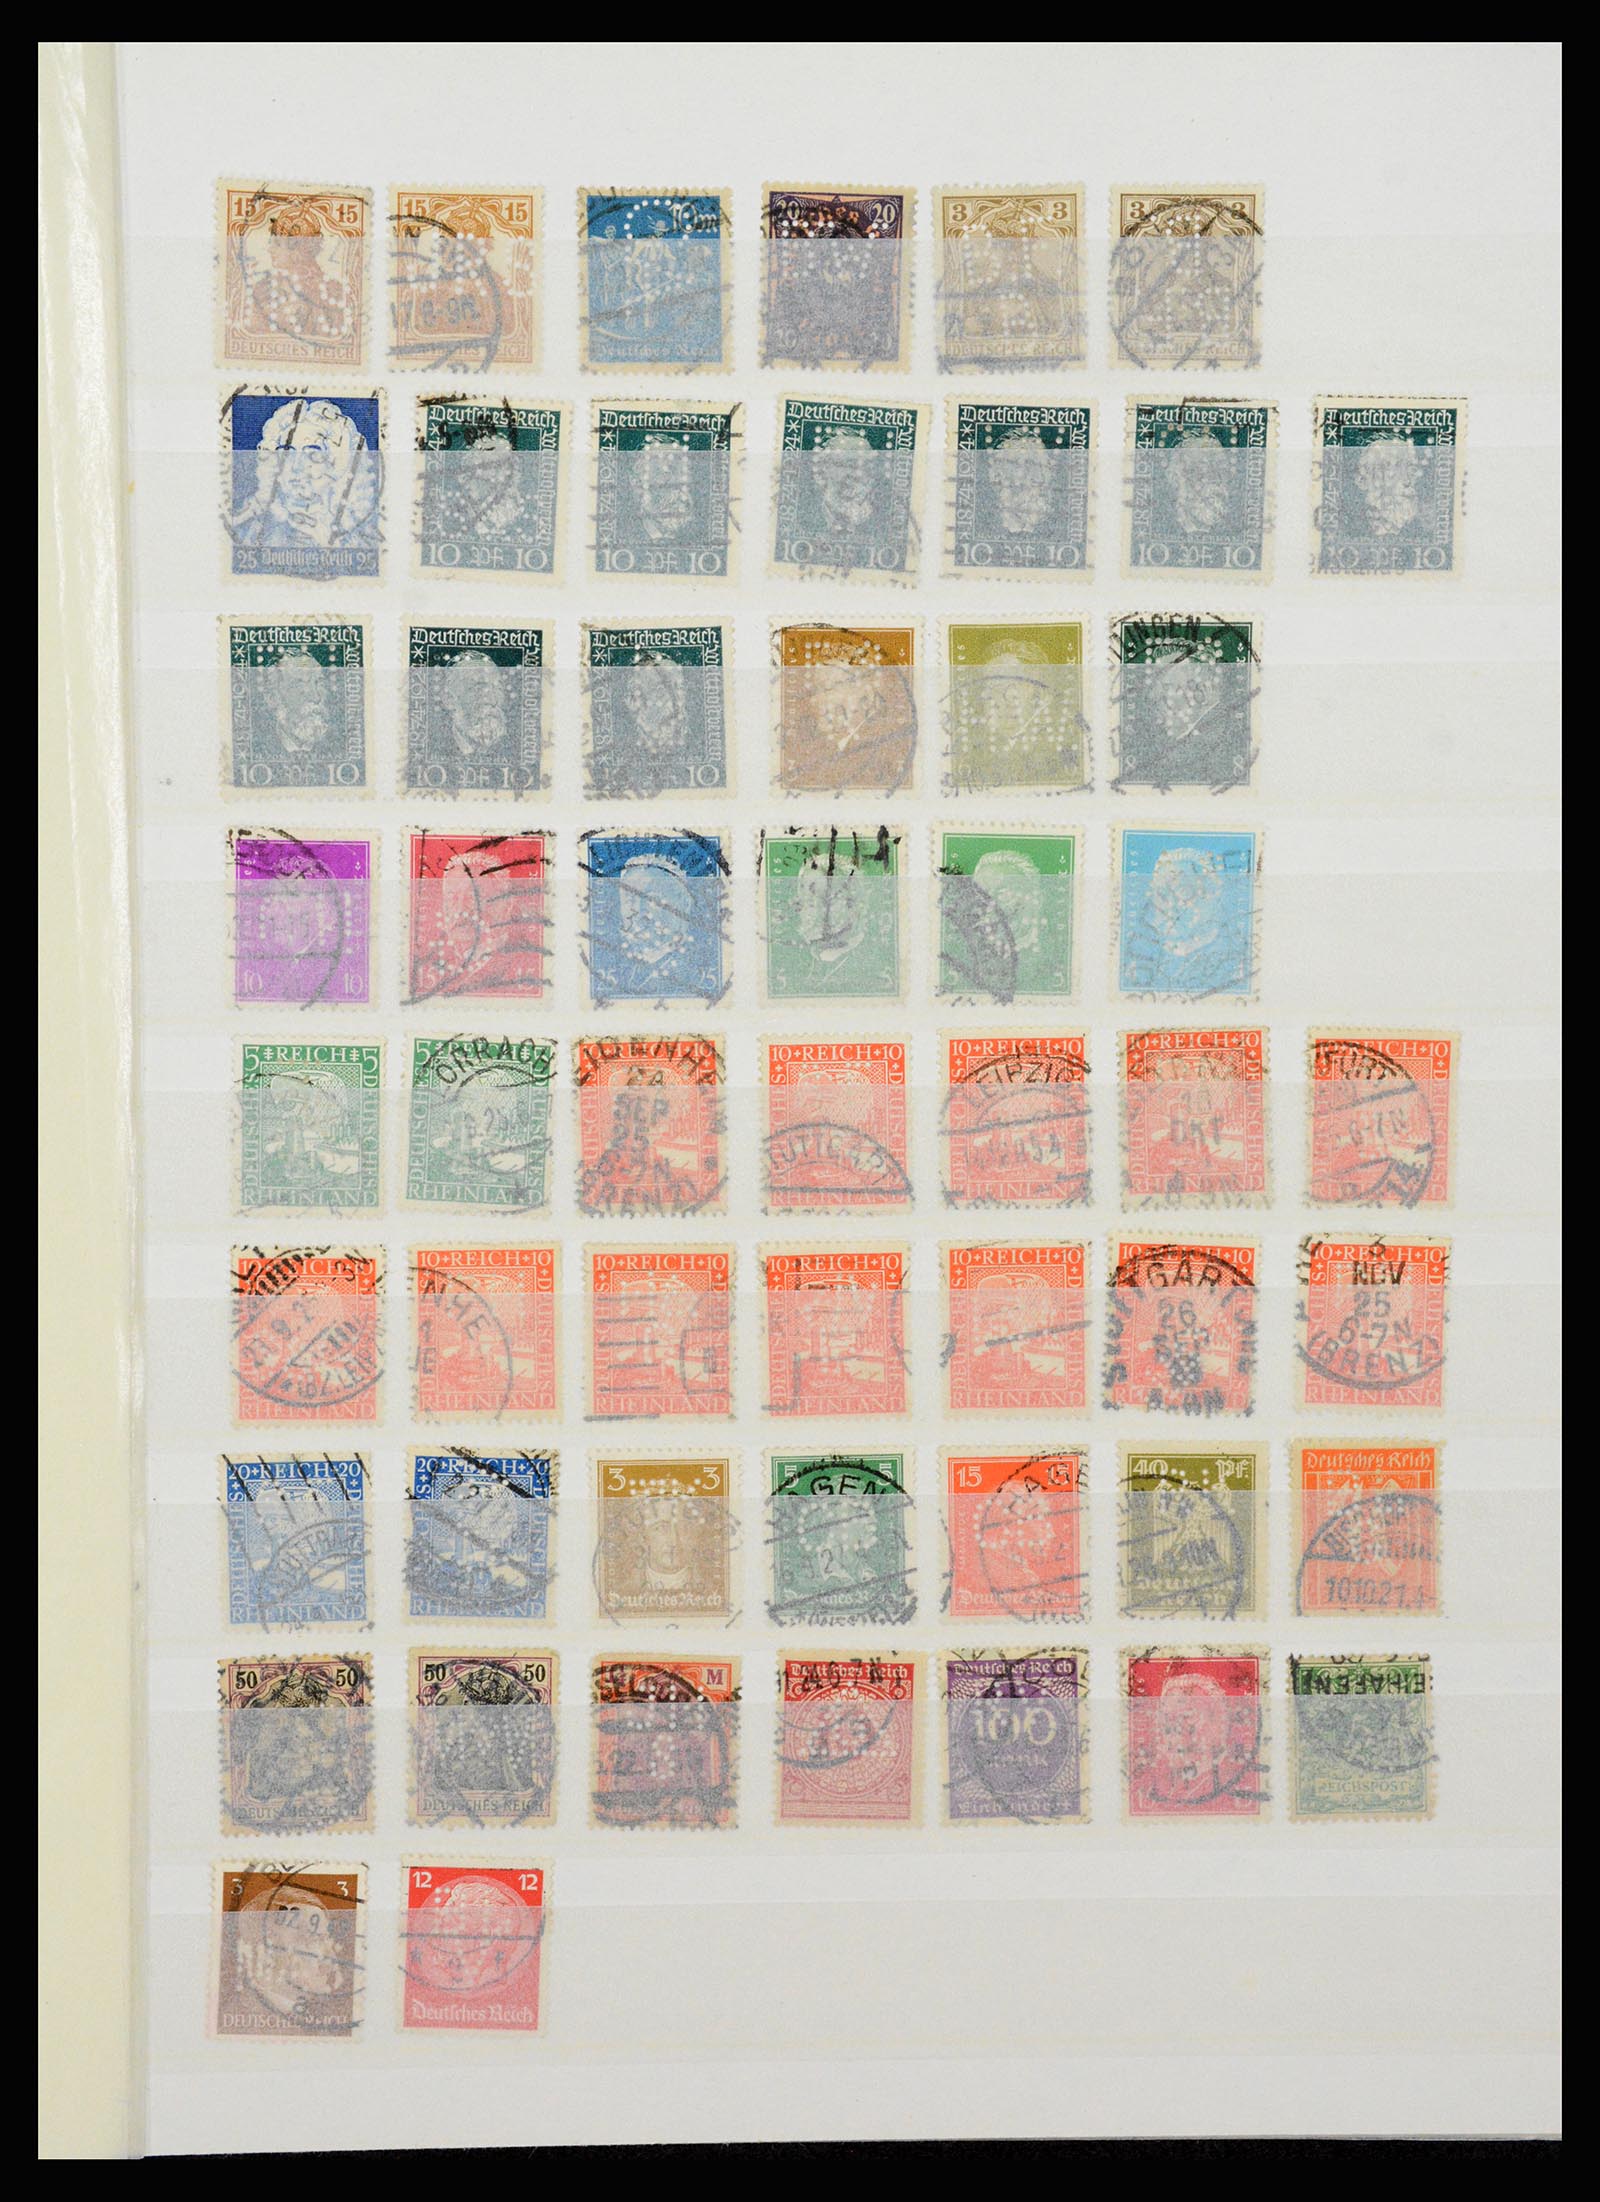 37254 001 - Stamp collection 37254 German Reich perfins 1900-1945.